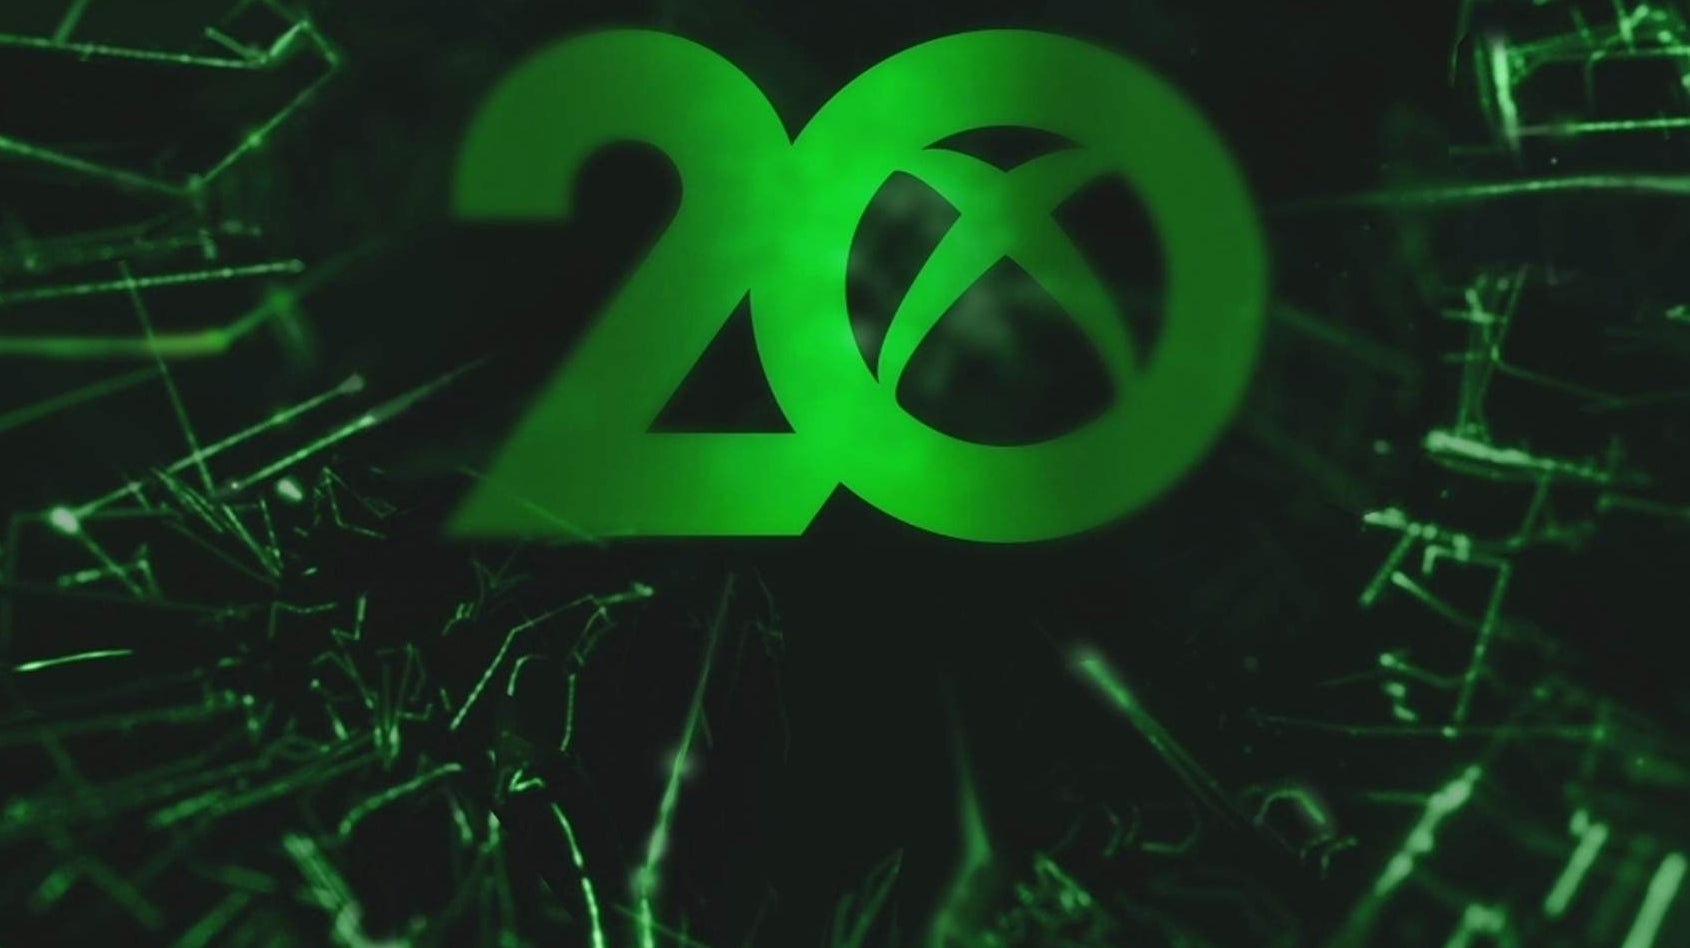 Bộ điều khiển kỷ niệm 20 năm của Xbox đã chính thức ra mắt, đem lại sự phấn khởi và cảm hứng cho người dùng. Bộ điều khiển không chỉ mang một thiết kế độc đáo, mà còn được tích hợp hệ thống mở khóa nội dung độc quyền, giúp bạn trải nghiệm các game độc đáo một cách dễ dàng hơn bao giờ hết!